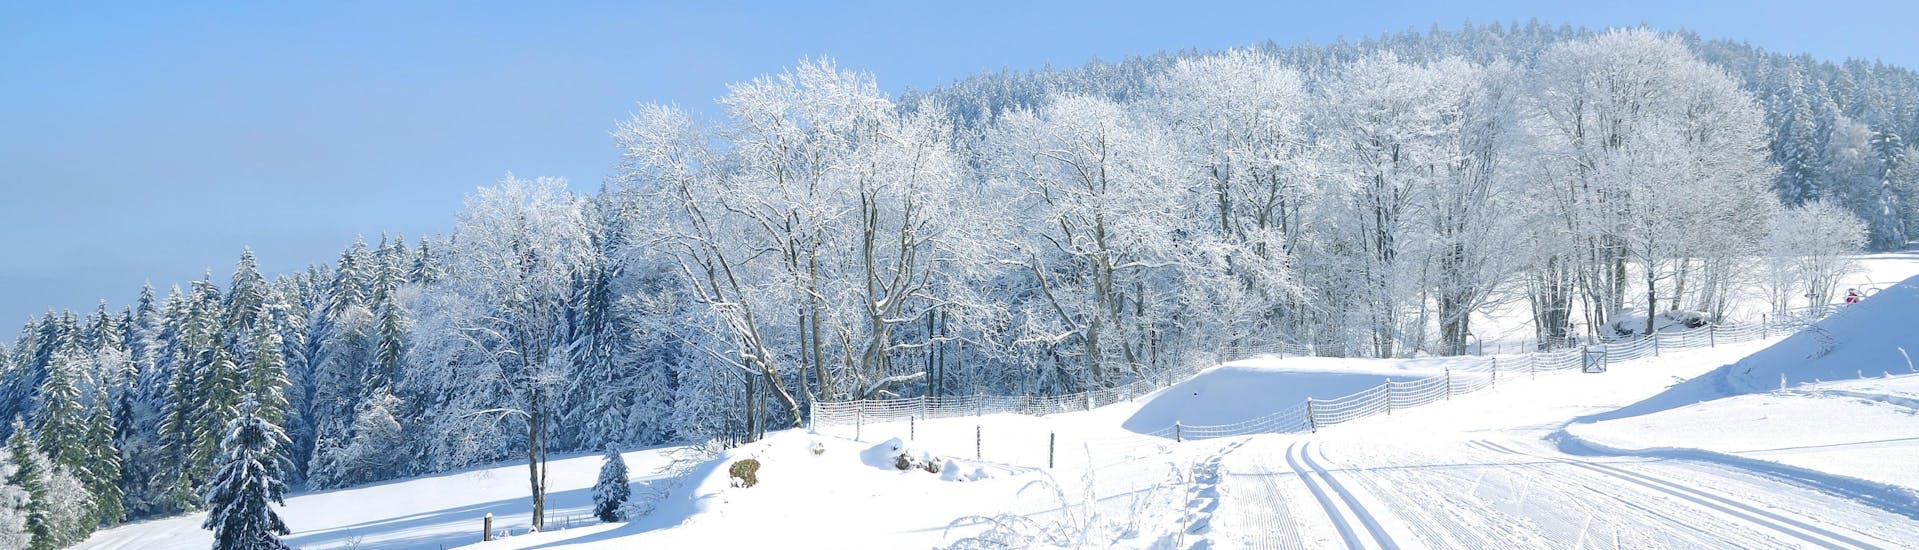 Foto van de pistes in Mitterdorf (Almberg) - Mitterfirmiansreut waar u skilessen kunt boeken.